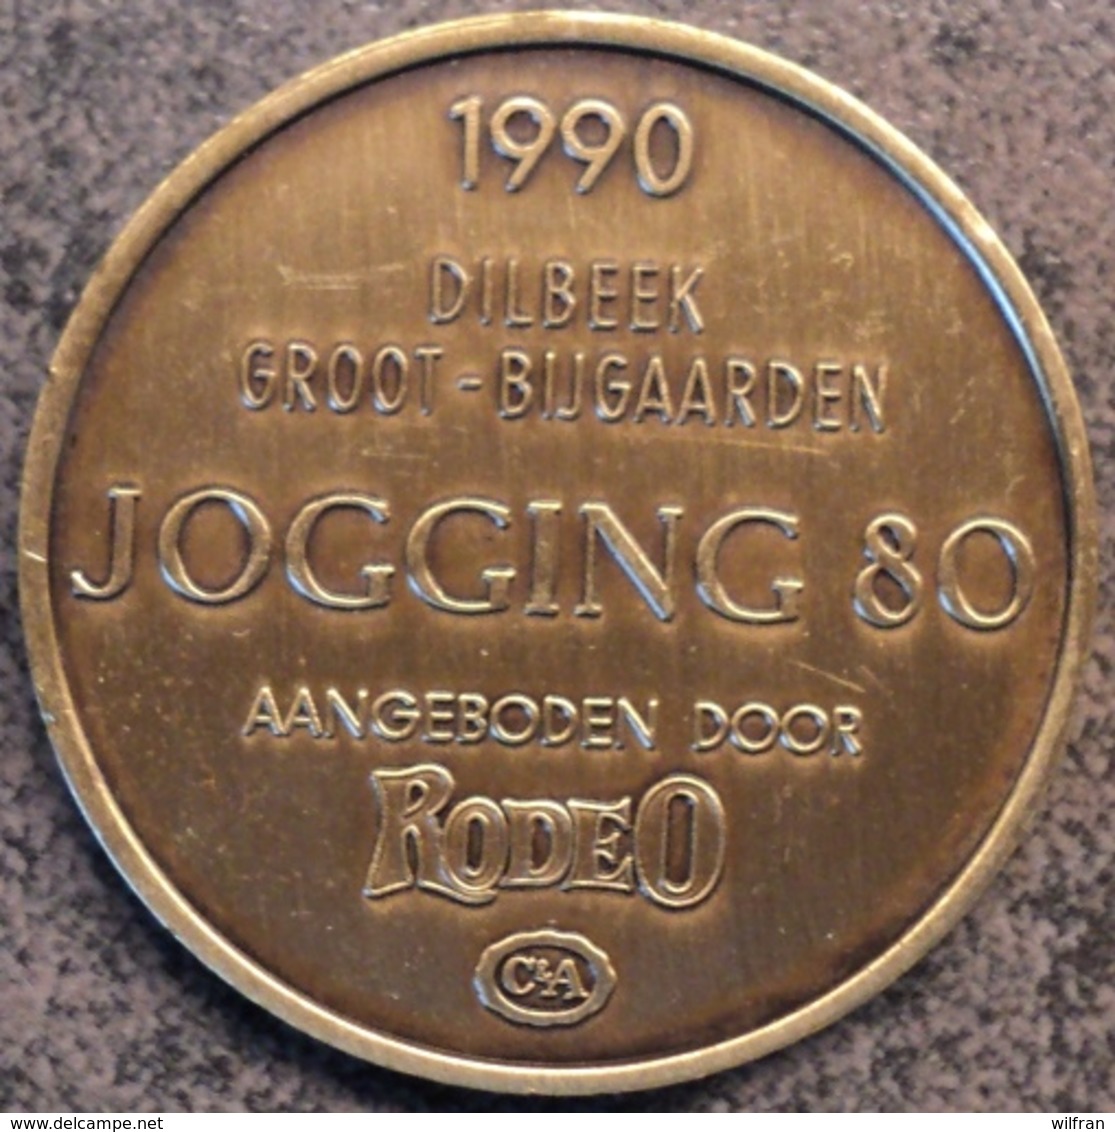 4095 Vz Afbeelding - Kz 1990 Dilbeek-Groot-Bijgaarden Jogging80 Aangeboden Door Rodeo C&A - Gemeindemünzmarken